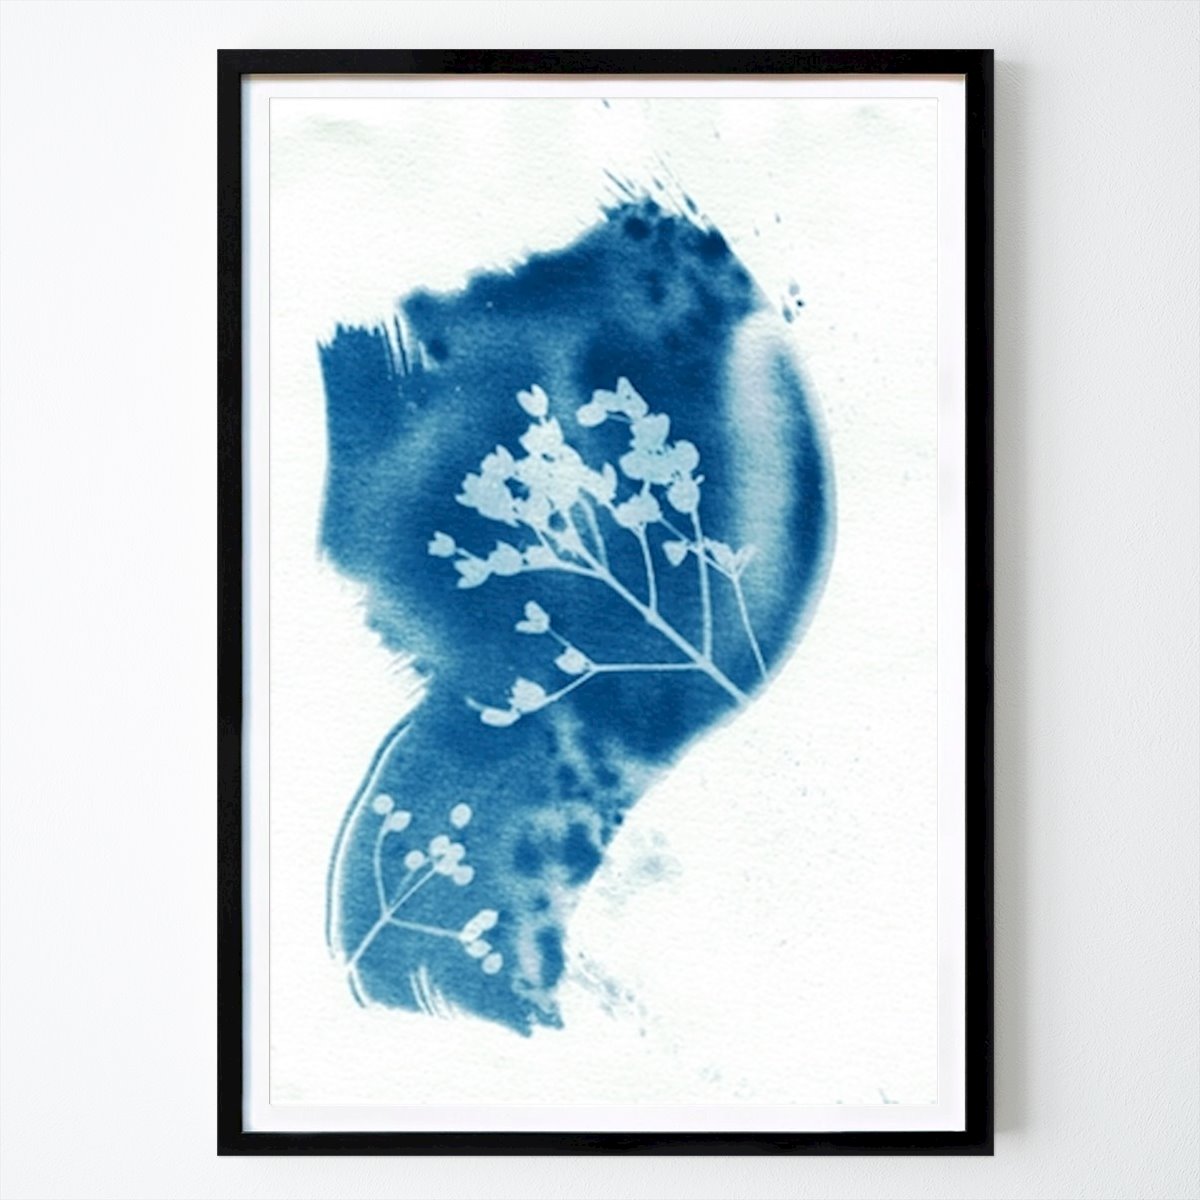 Poster: Abstrakte blaue Natur von Lies Praet von Printler